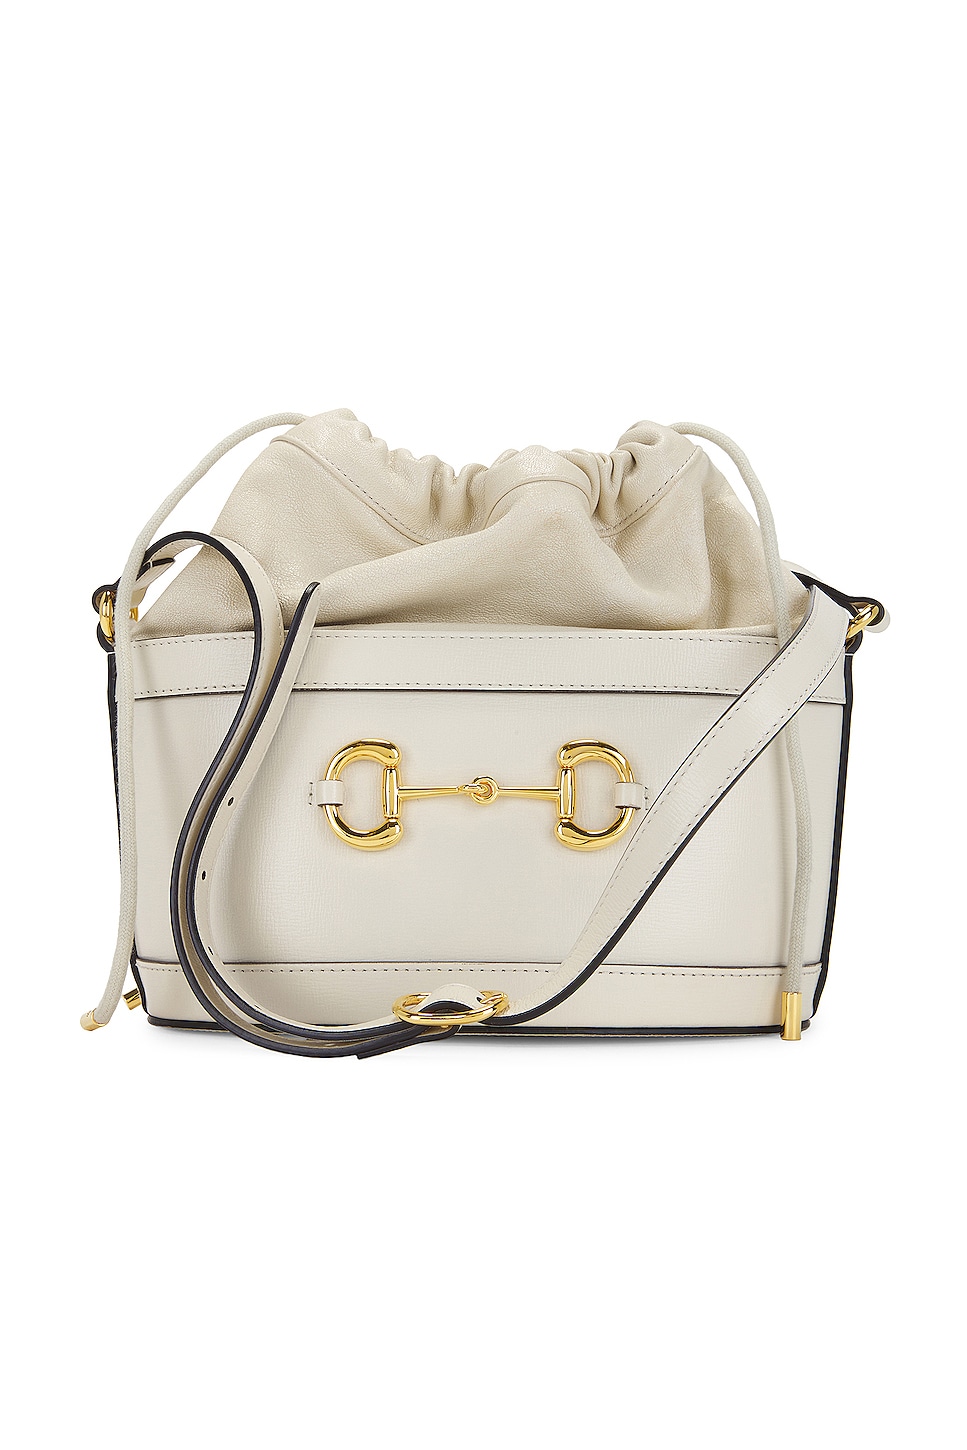 Gucci 'horsebit 1955' Shoulder Bag in White